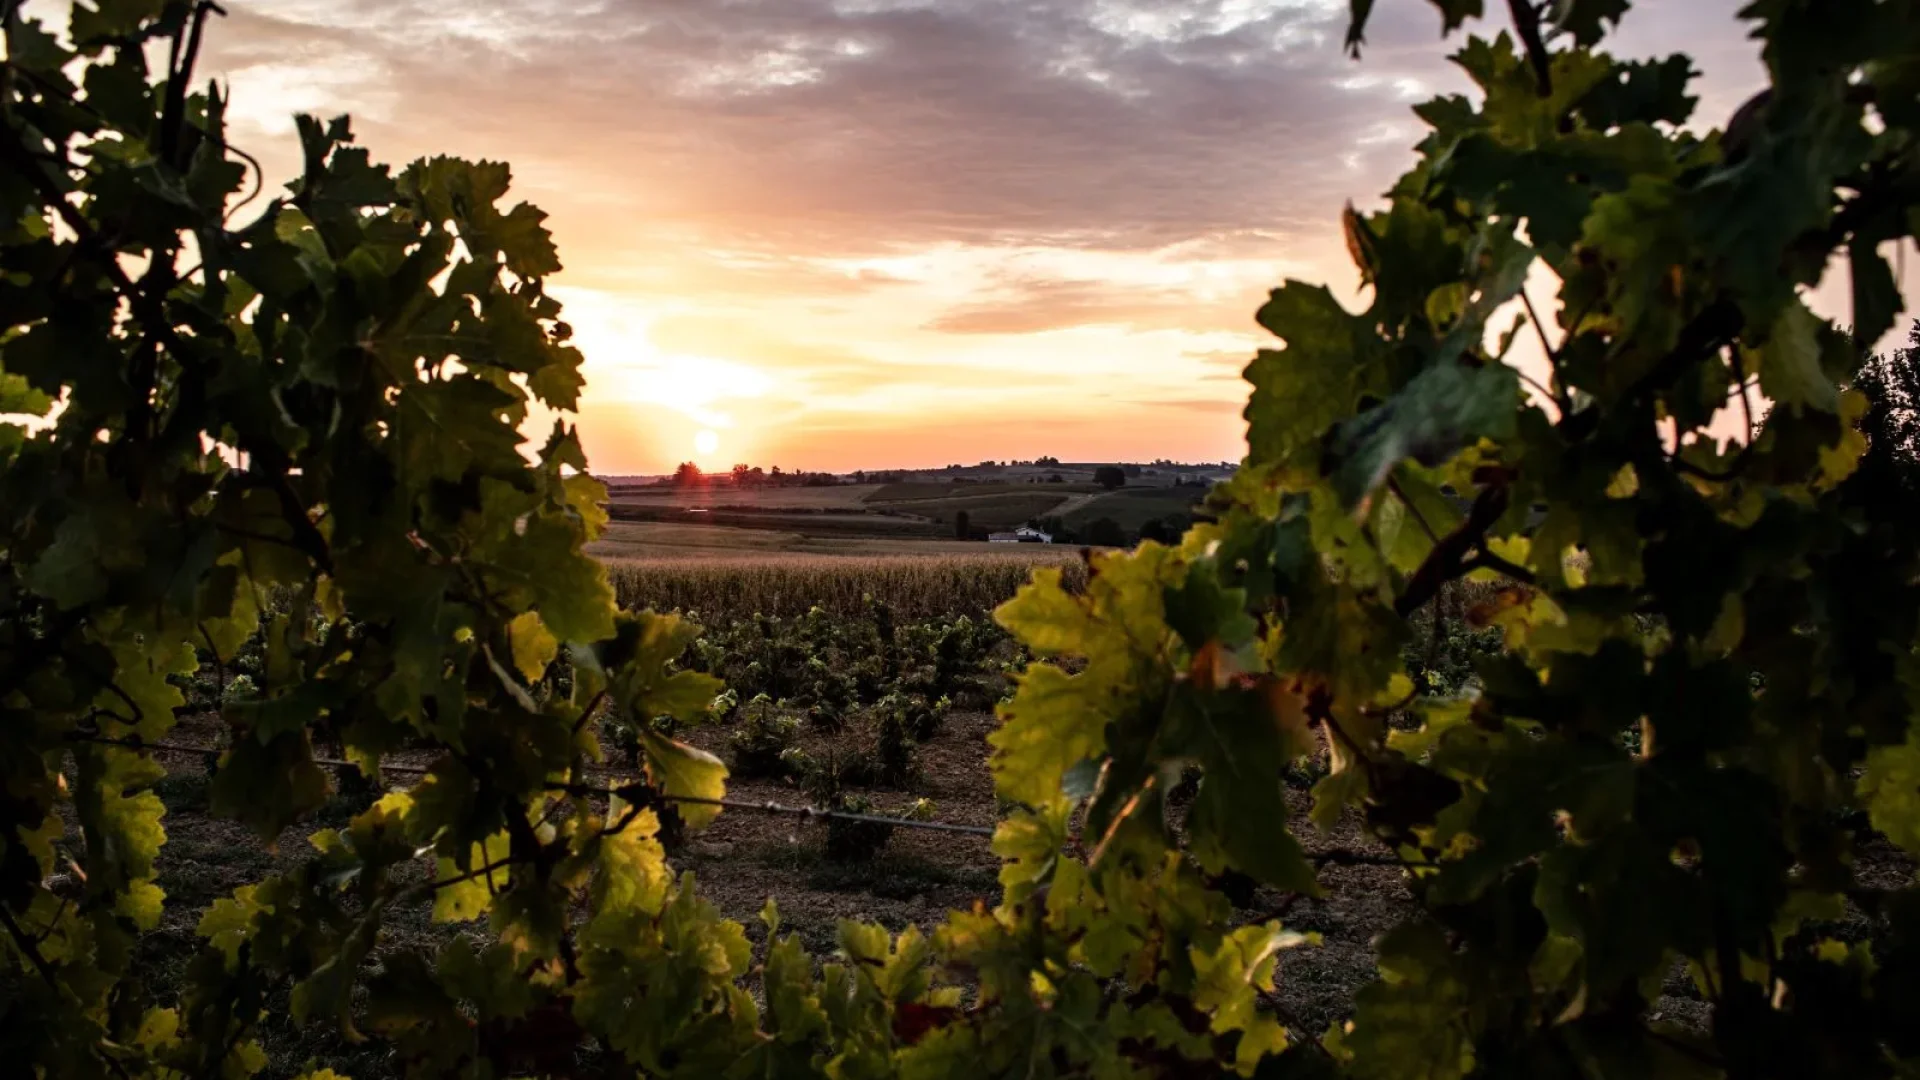 Floc de Gascogne vineyard landscape